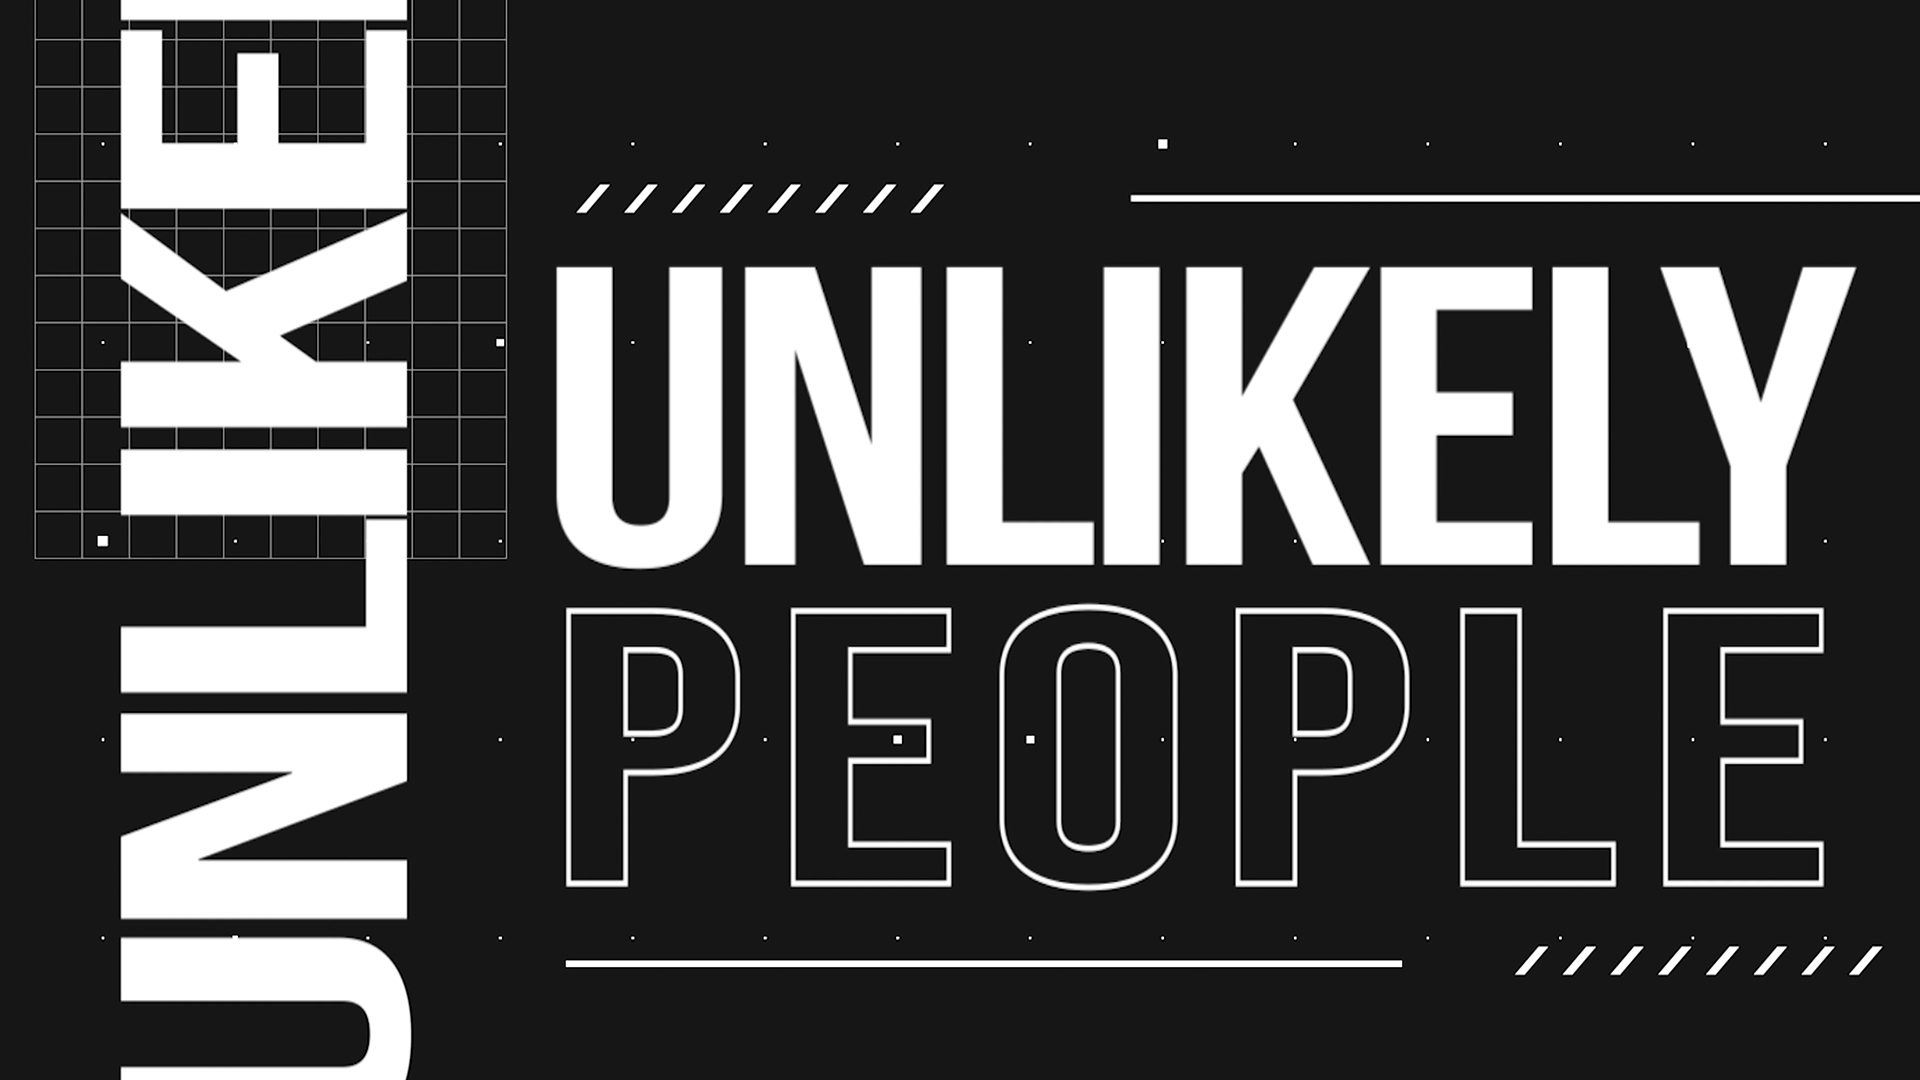 Unlikely People